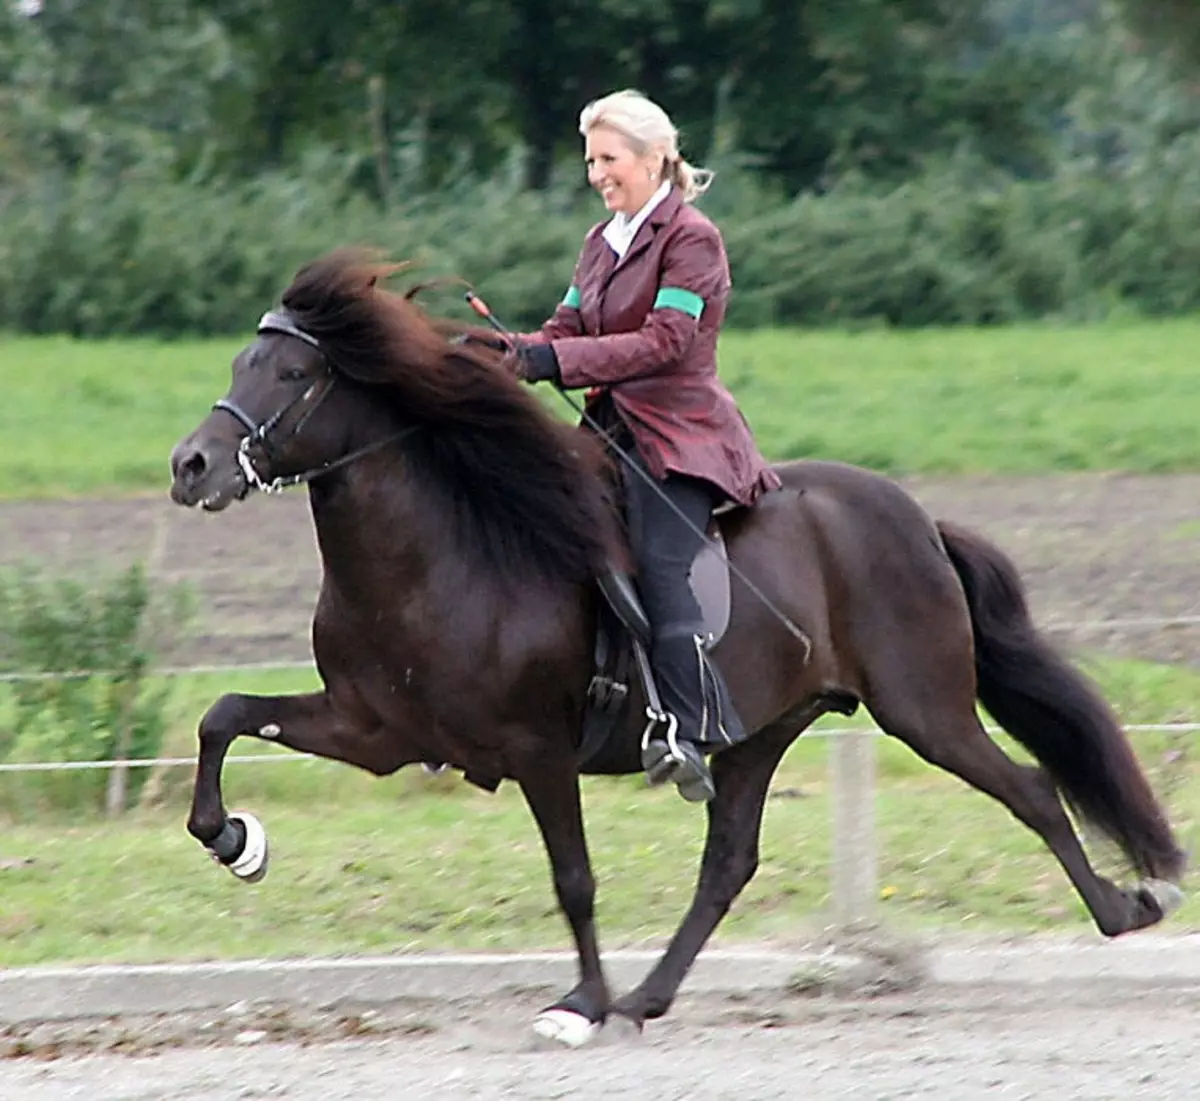 Cavalls corrents: Quin tipus de funcionament és considerat el més ràpid? Com estan els cavalls corren trot i allyr? La forma més ràpida i més incòmode de conduir un cavall 19169_5